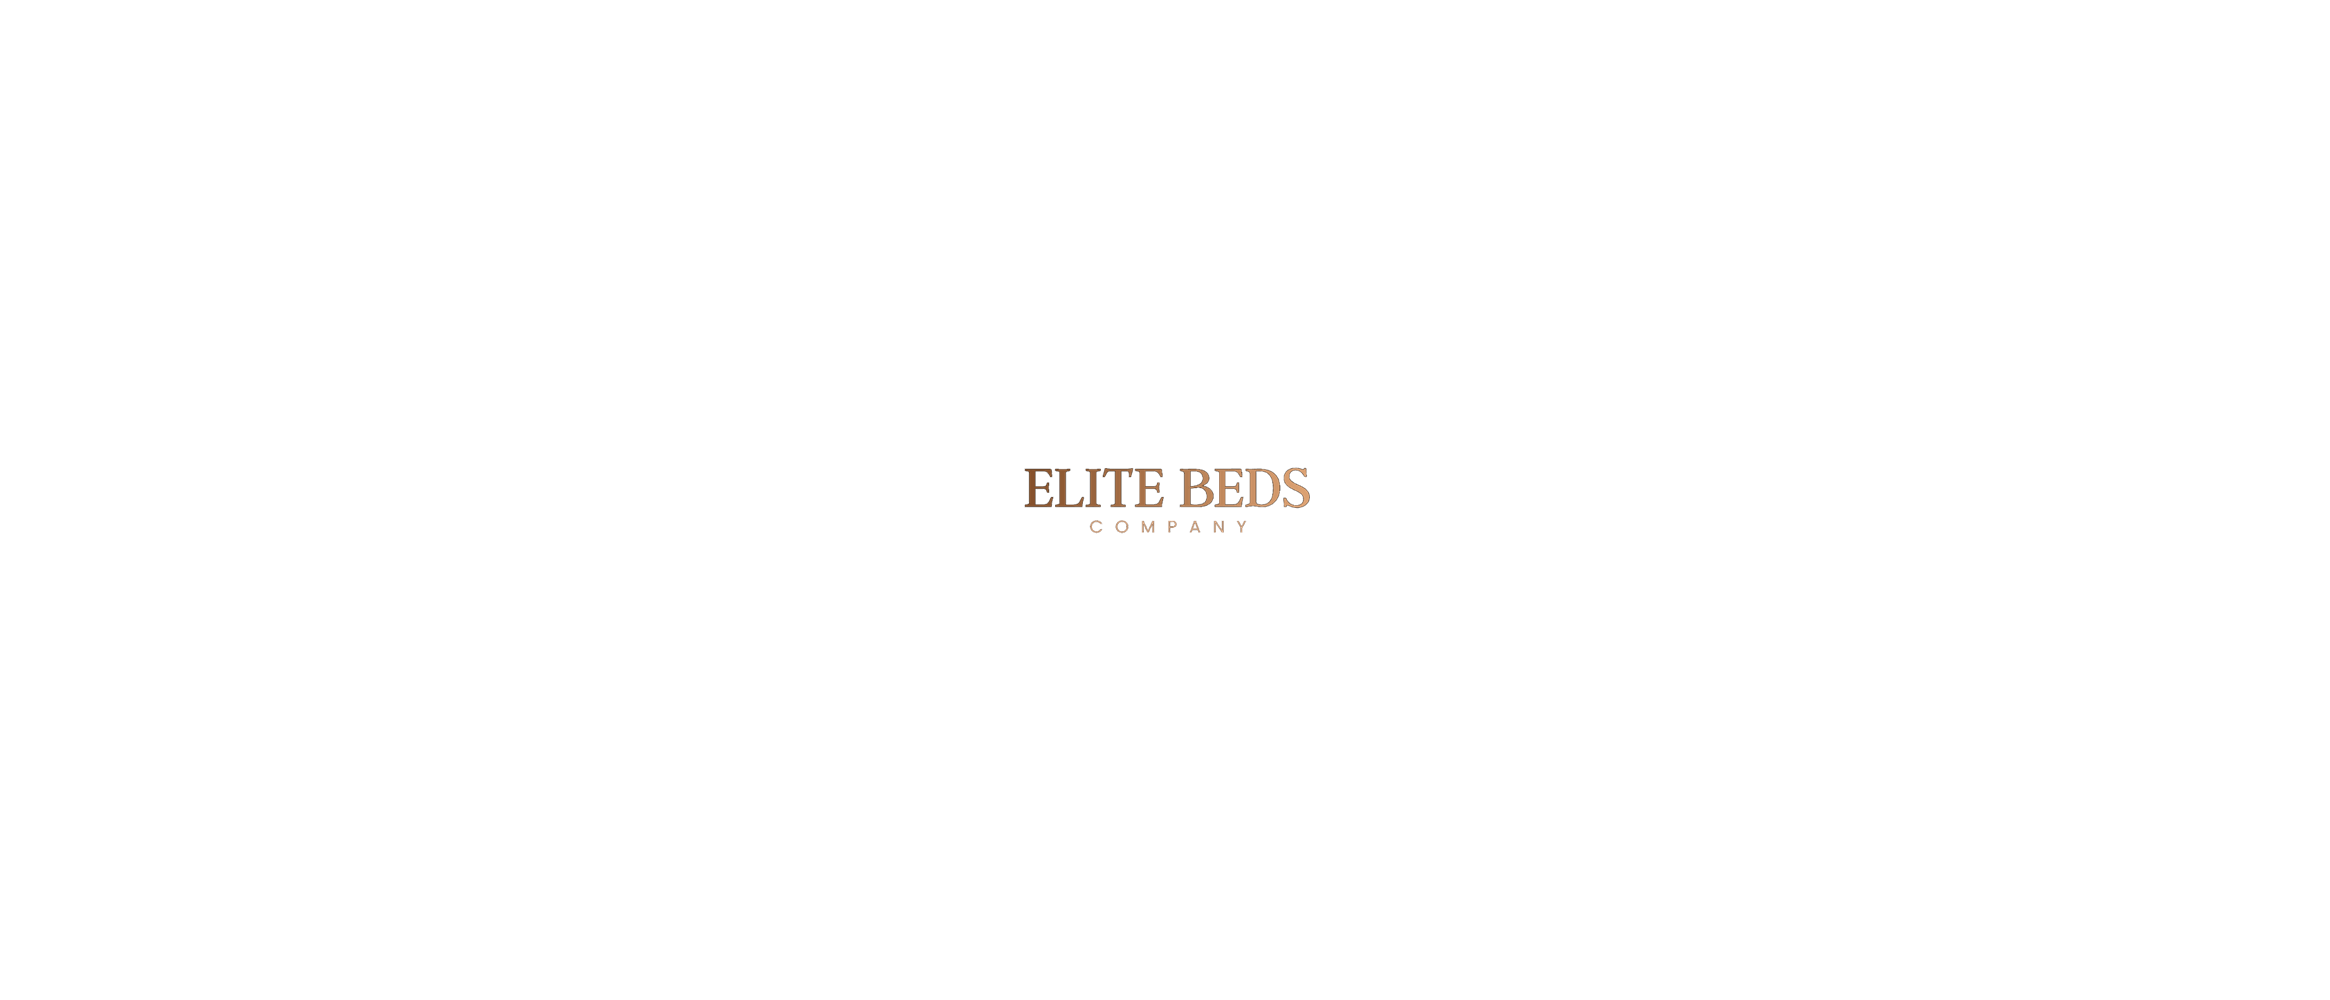 Elite Beds Company